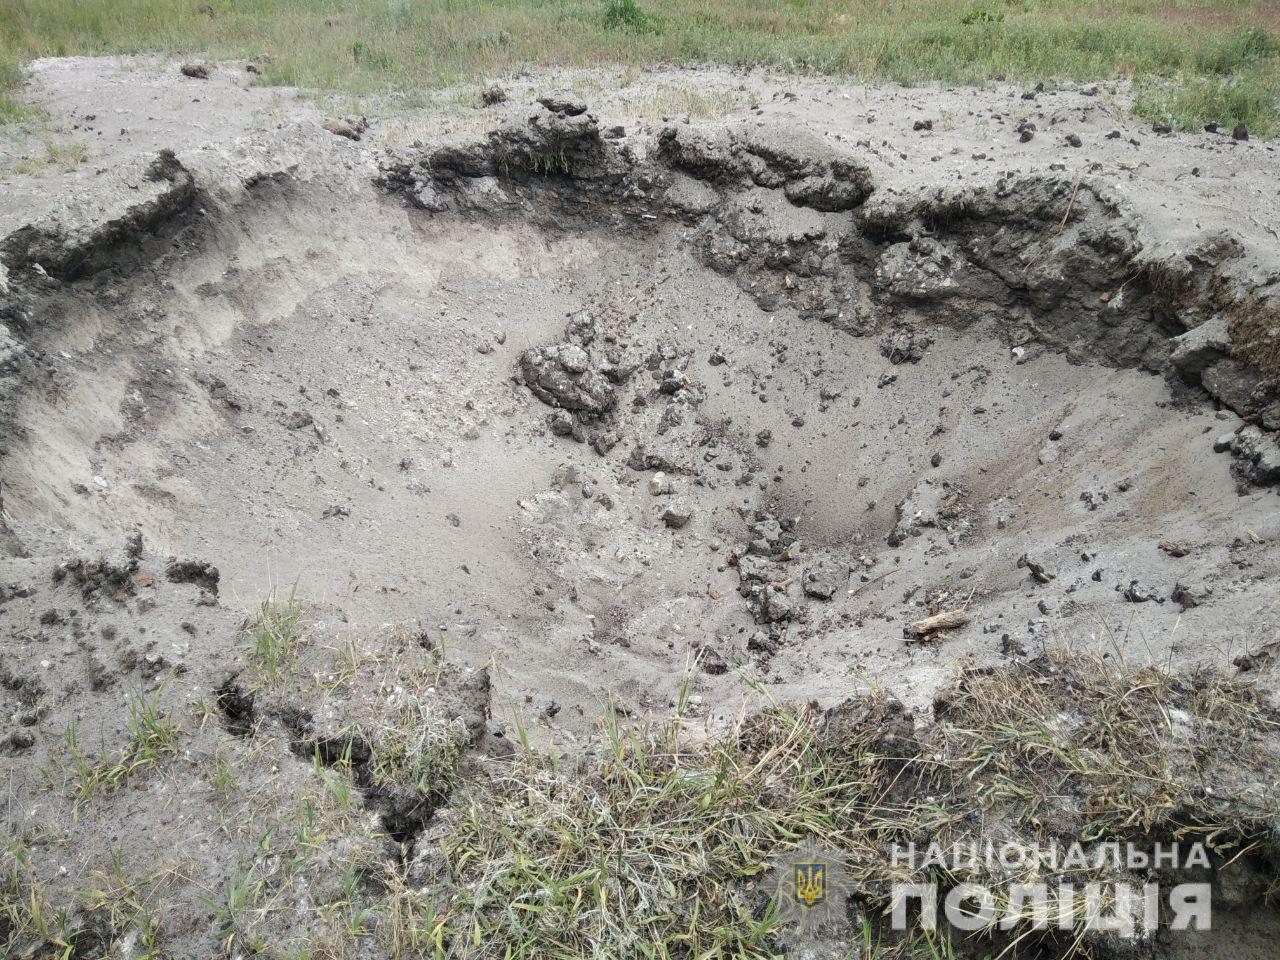 Били из “Ураганов” и танков: 26 мая в Донецкой области оккупанты разрушили 94 мирных объекта. Есть погибшие 1